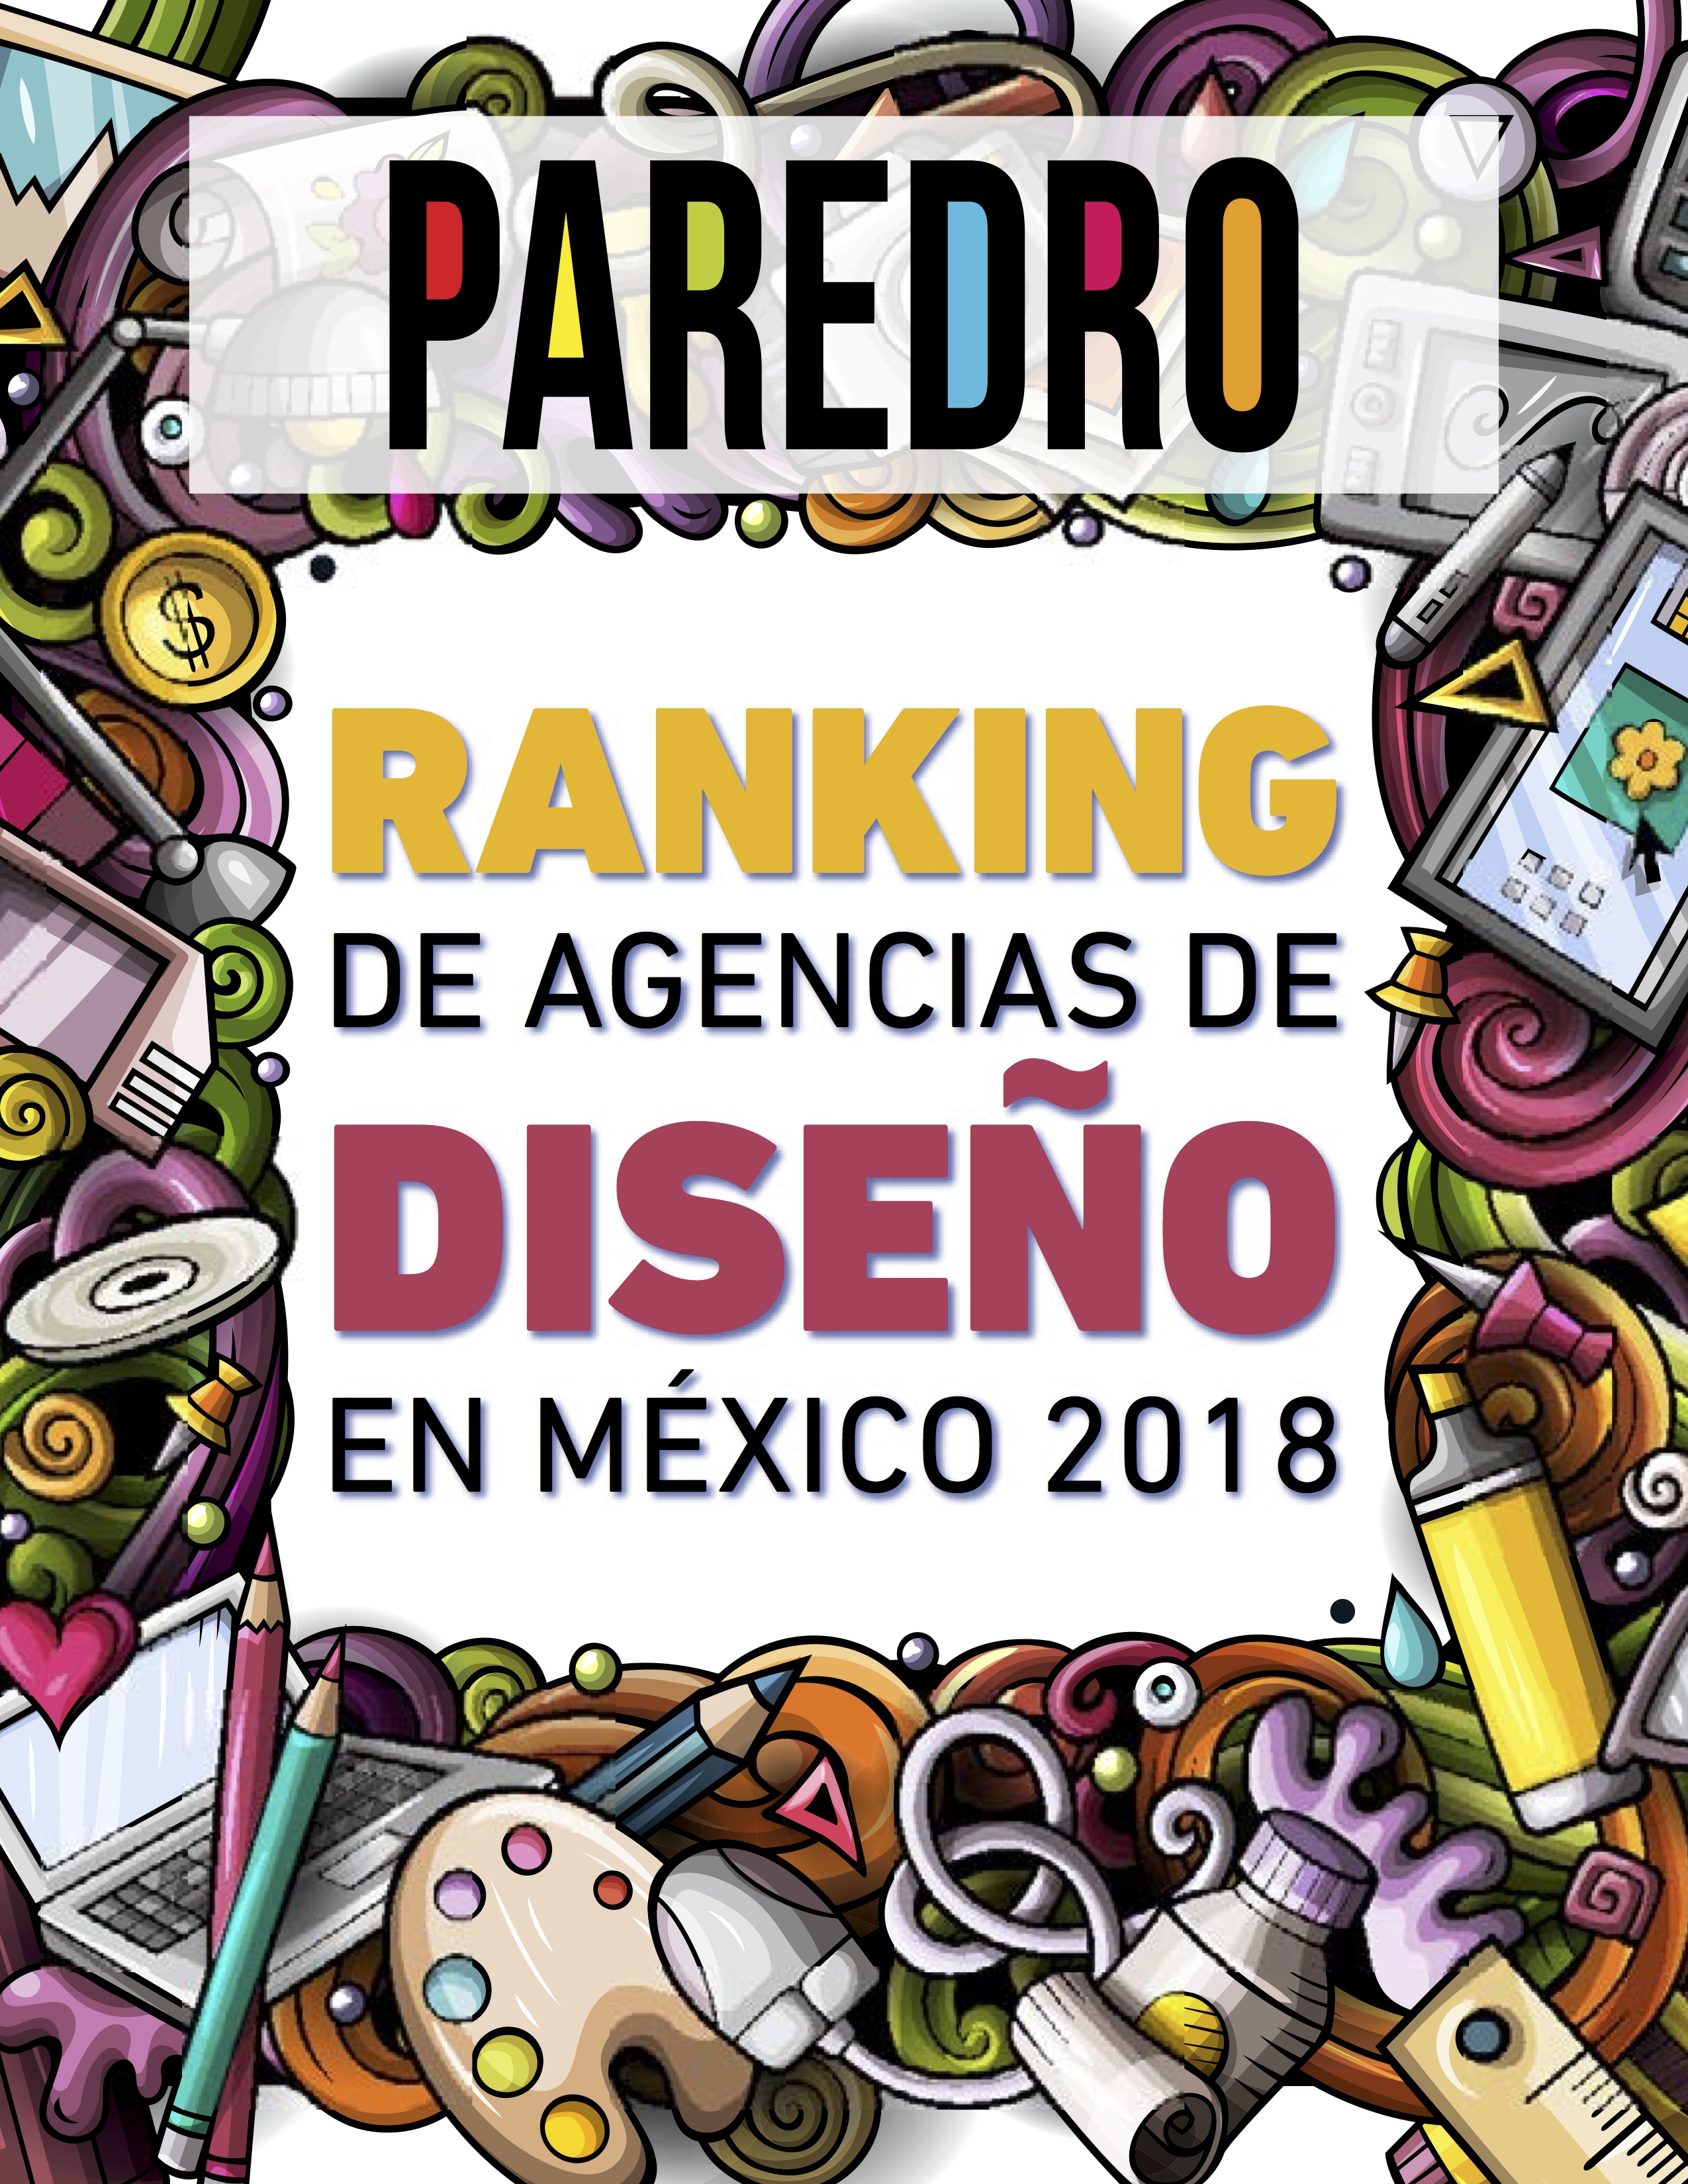 Paredro trae de nuevo su estudio anual Ranking de Agencias de Diseño 2018, el cuál ofrece un análisis del sector en México, además es GRATIS.